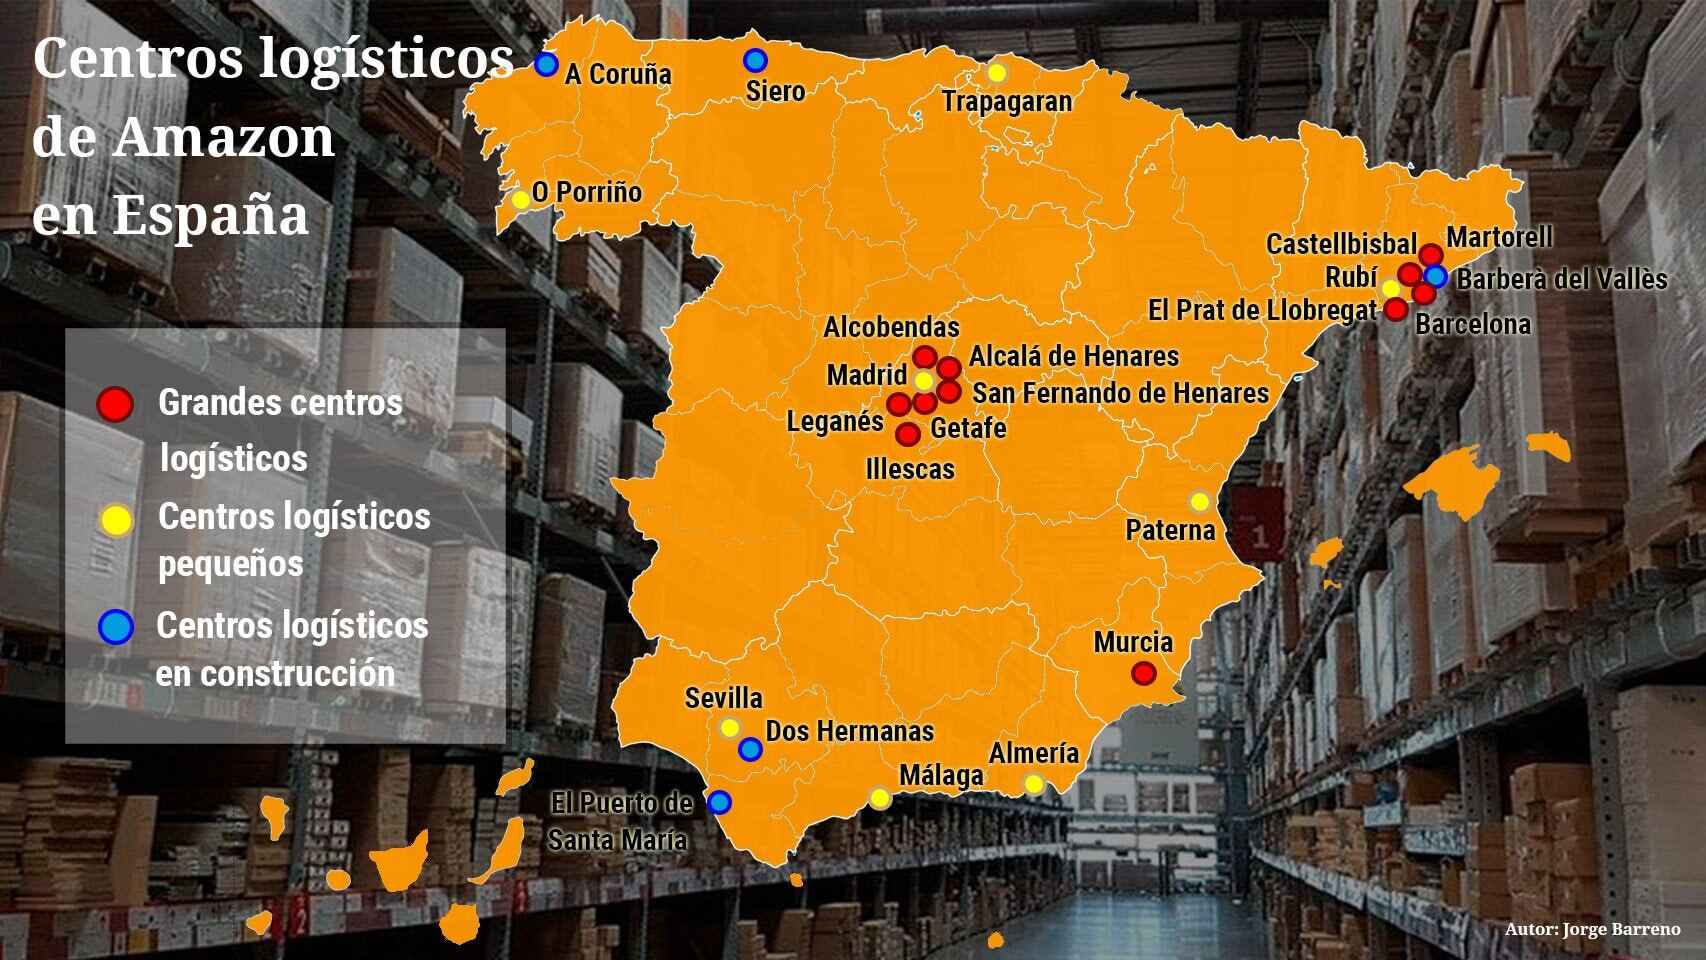 Mapa de los centros logísticos de Amazon en España.